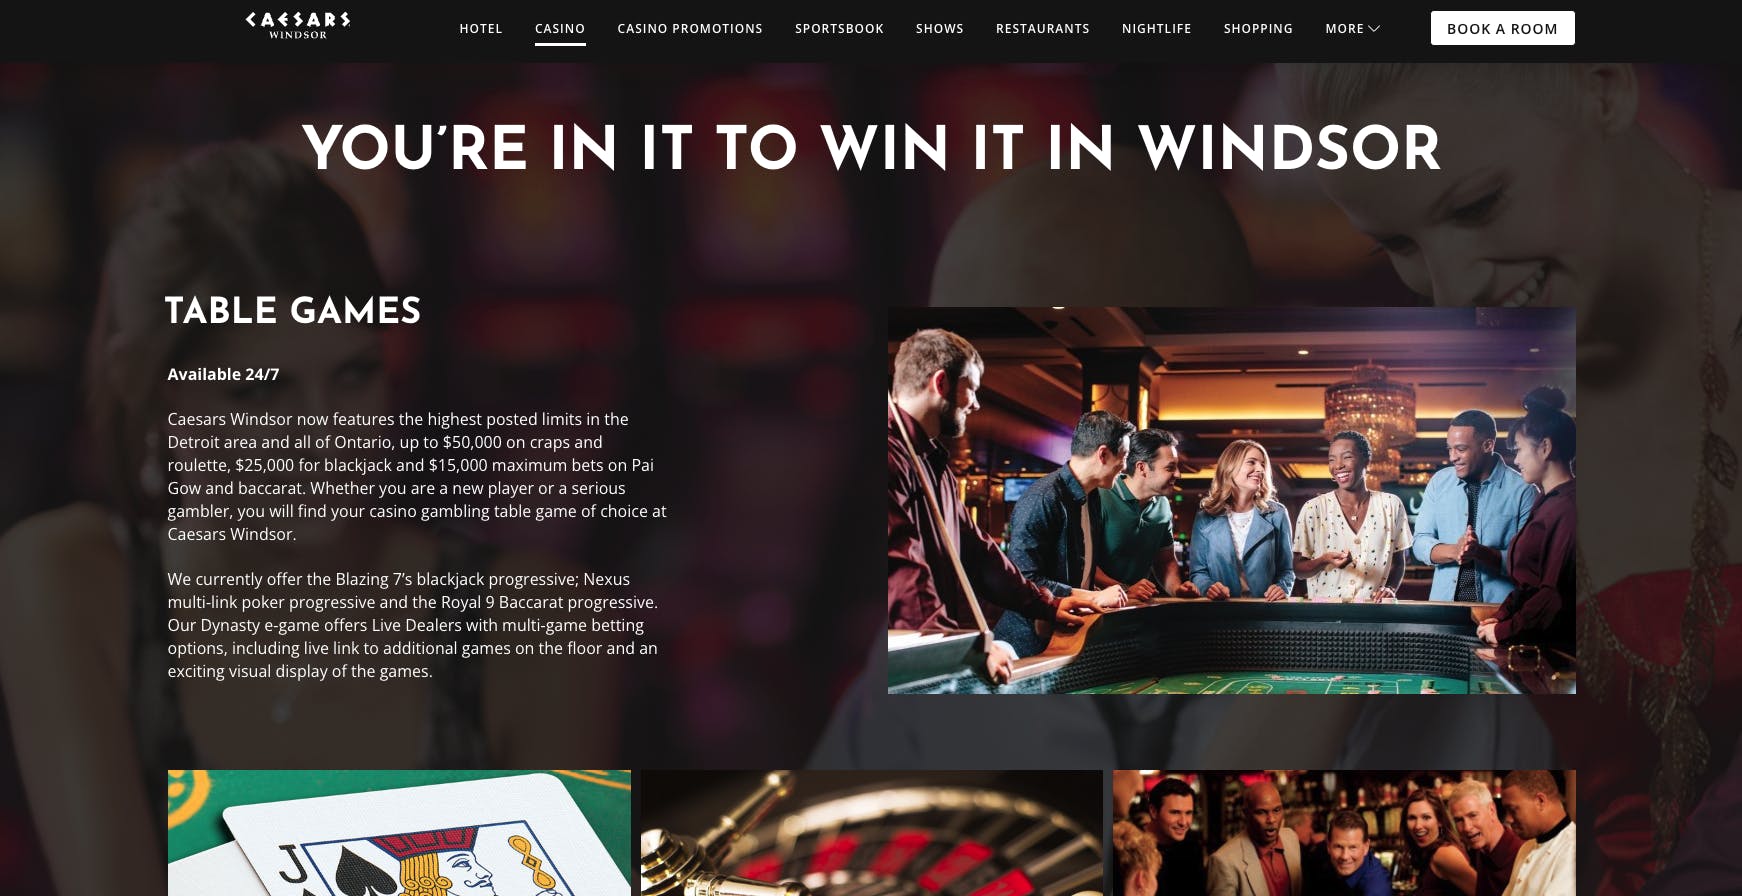 ceasars windsor hotel & casino website